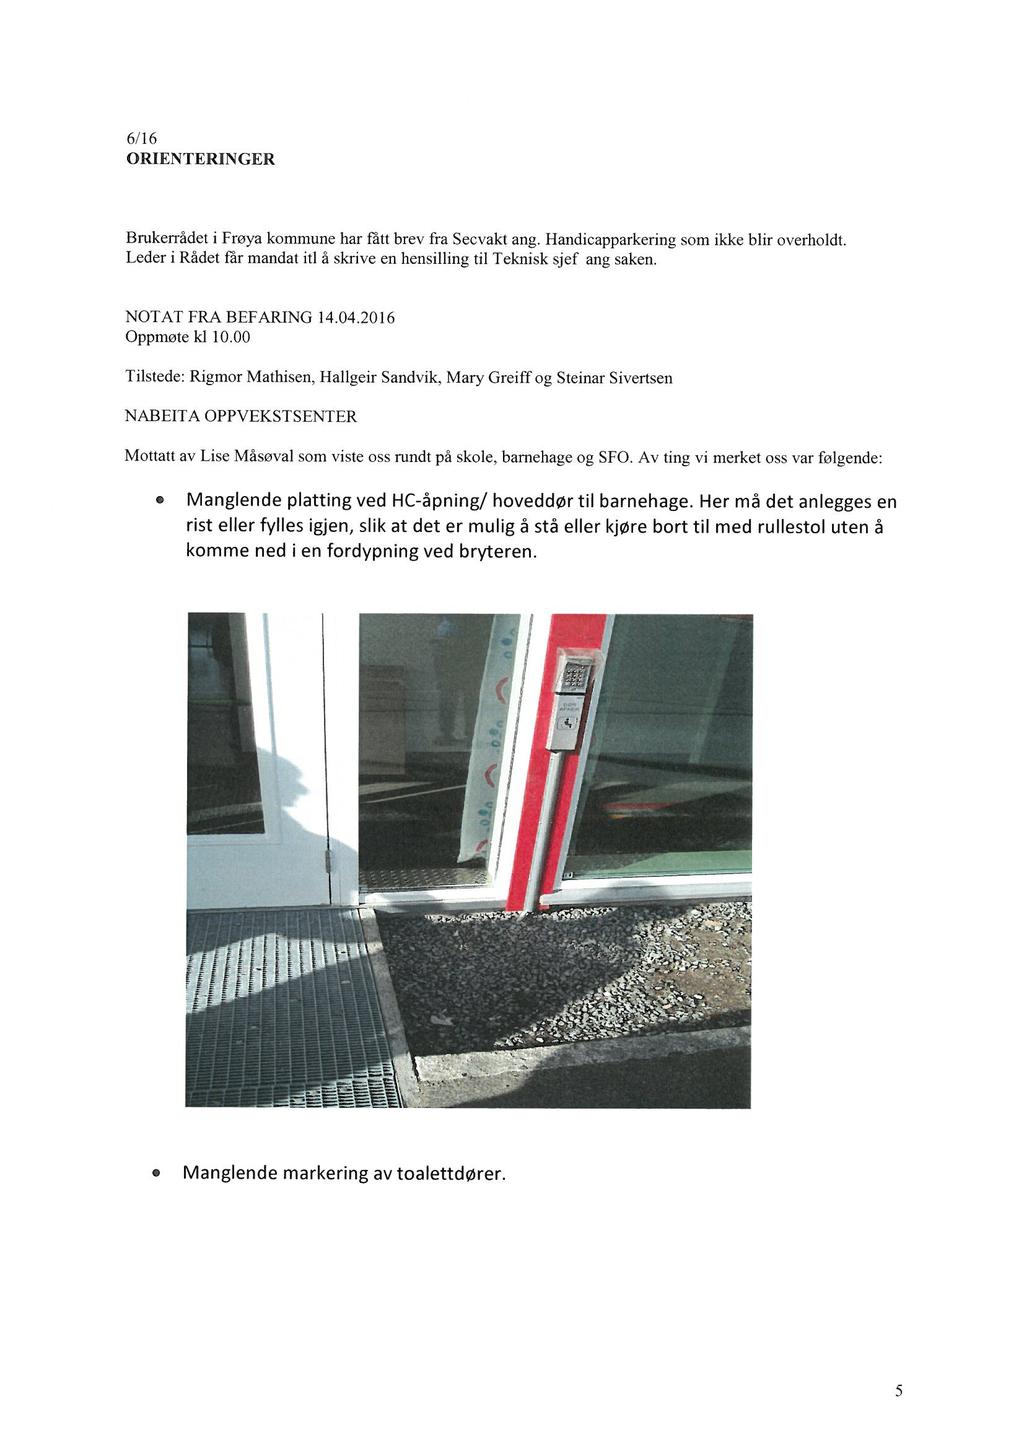 6/16 OMENTERINGER Brukerrådet i Frøya kommune har fatt brev frå Secvakt ang. Handicapparkering som ikke blir overholdt. Leder i Rådet får mandat itl å skrive en hensilling til Teknisk sjef ang saken.